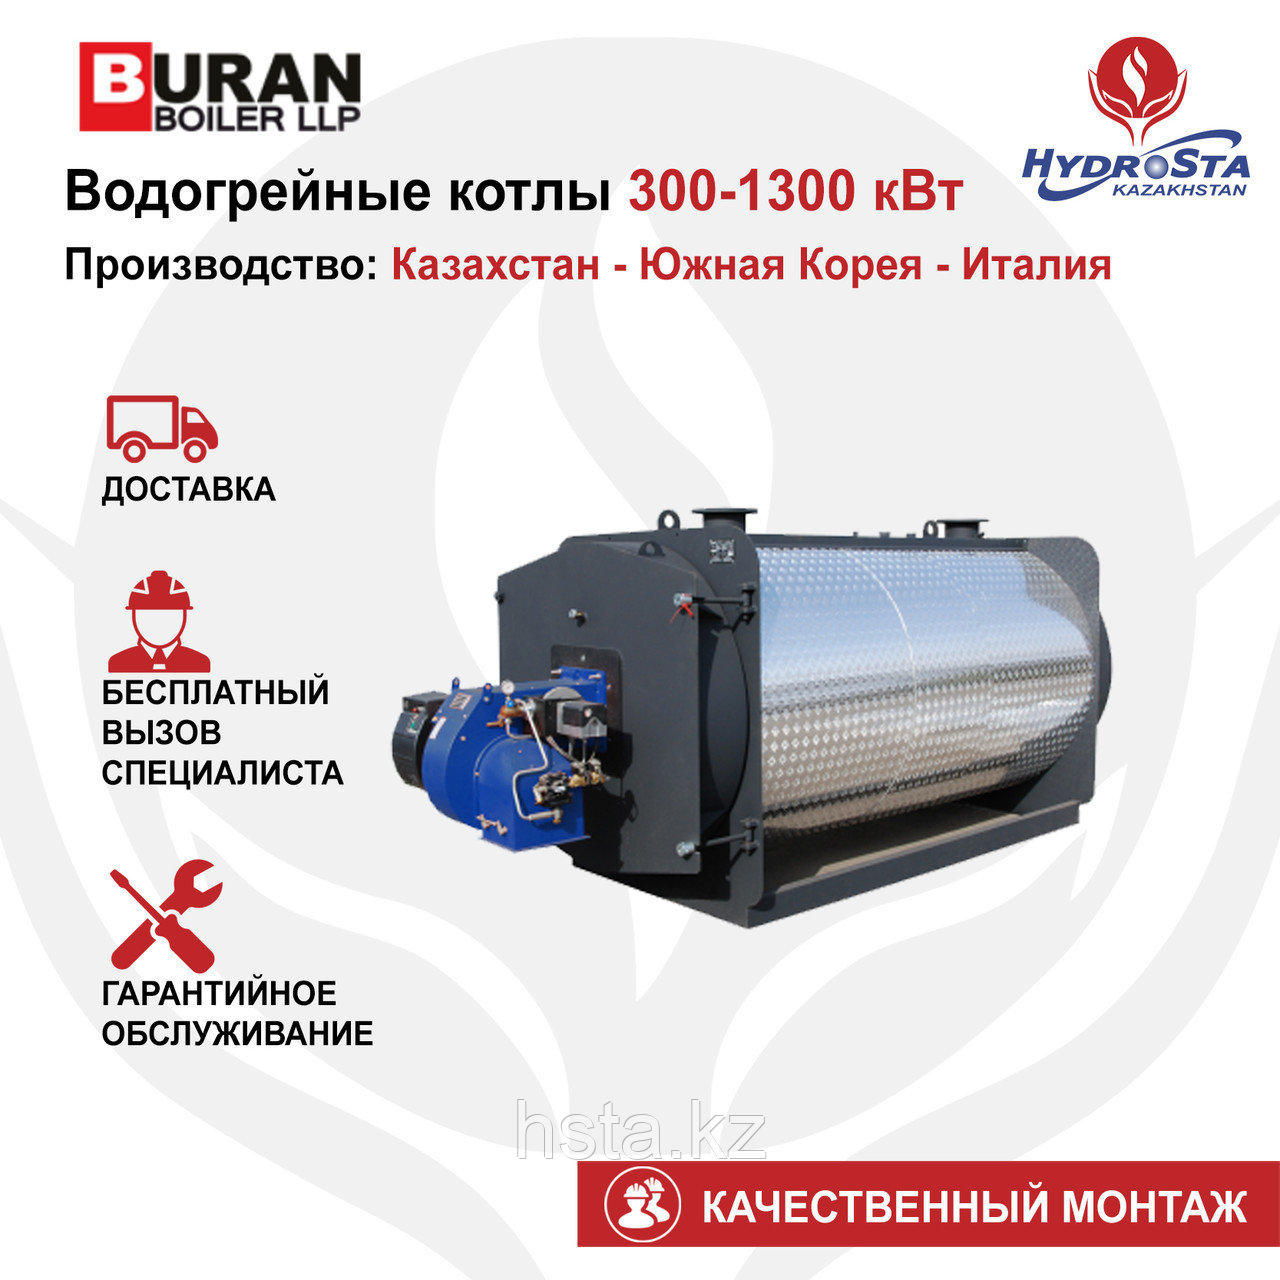 Котел одноконтурный Cronos BB-4060 (Buran Boiler) 400кВт (цена без горелки)